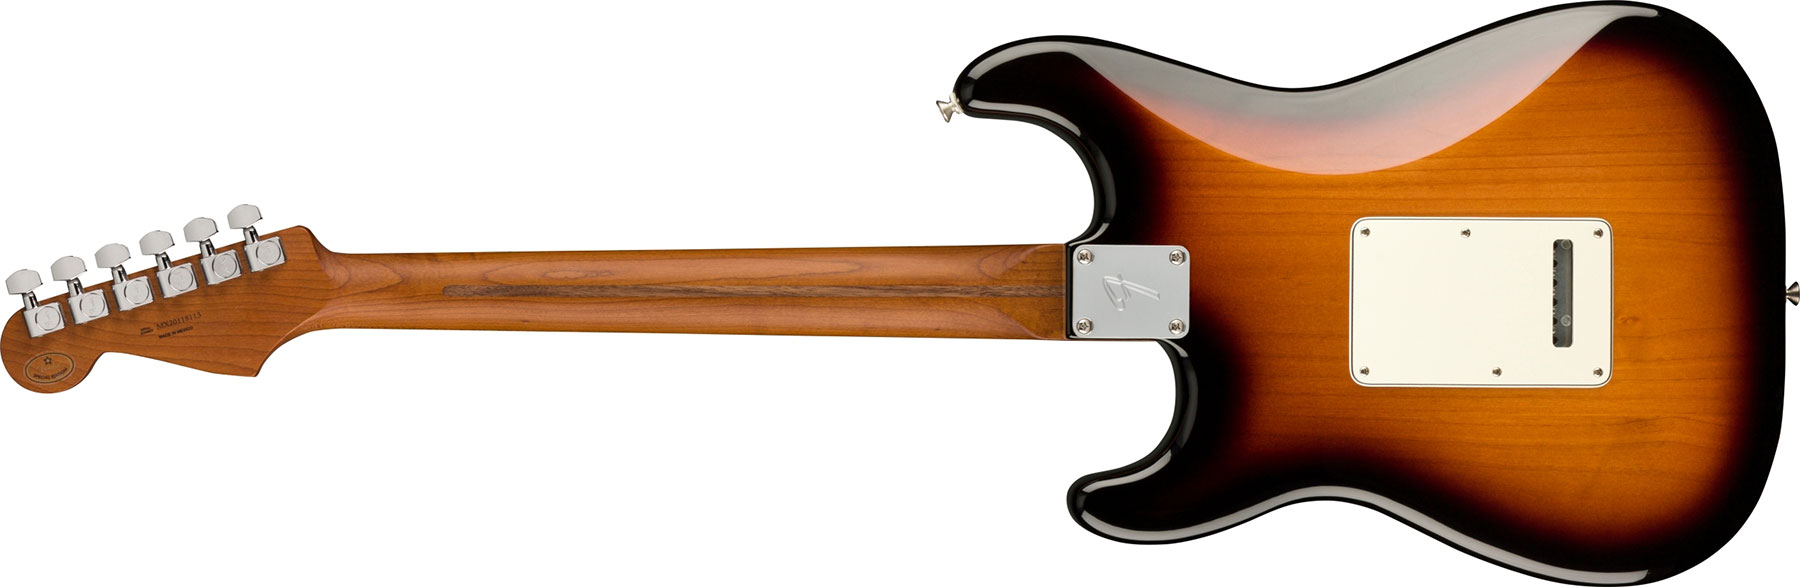 Fender Strat Player 1959 Texas Special Ltd Mex 3s Mn +housse X-tone 2015 Ele-bk - 2-color Sunburst - Pack Guitare Électrique - Variation 1